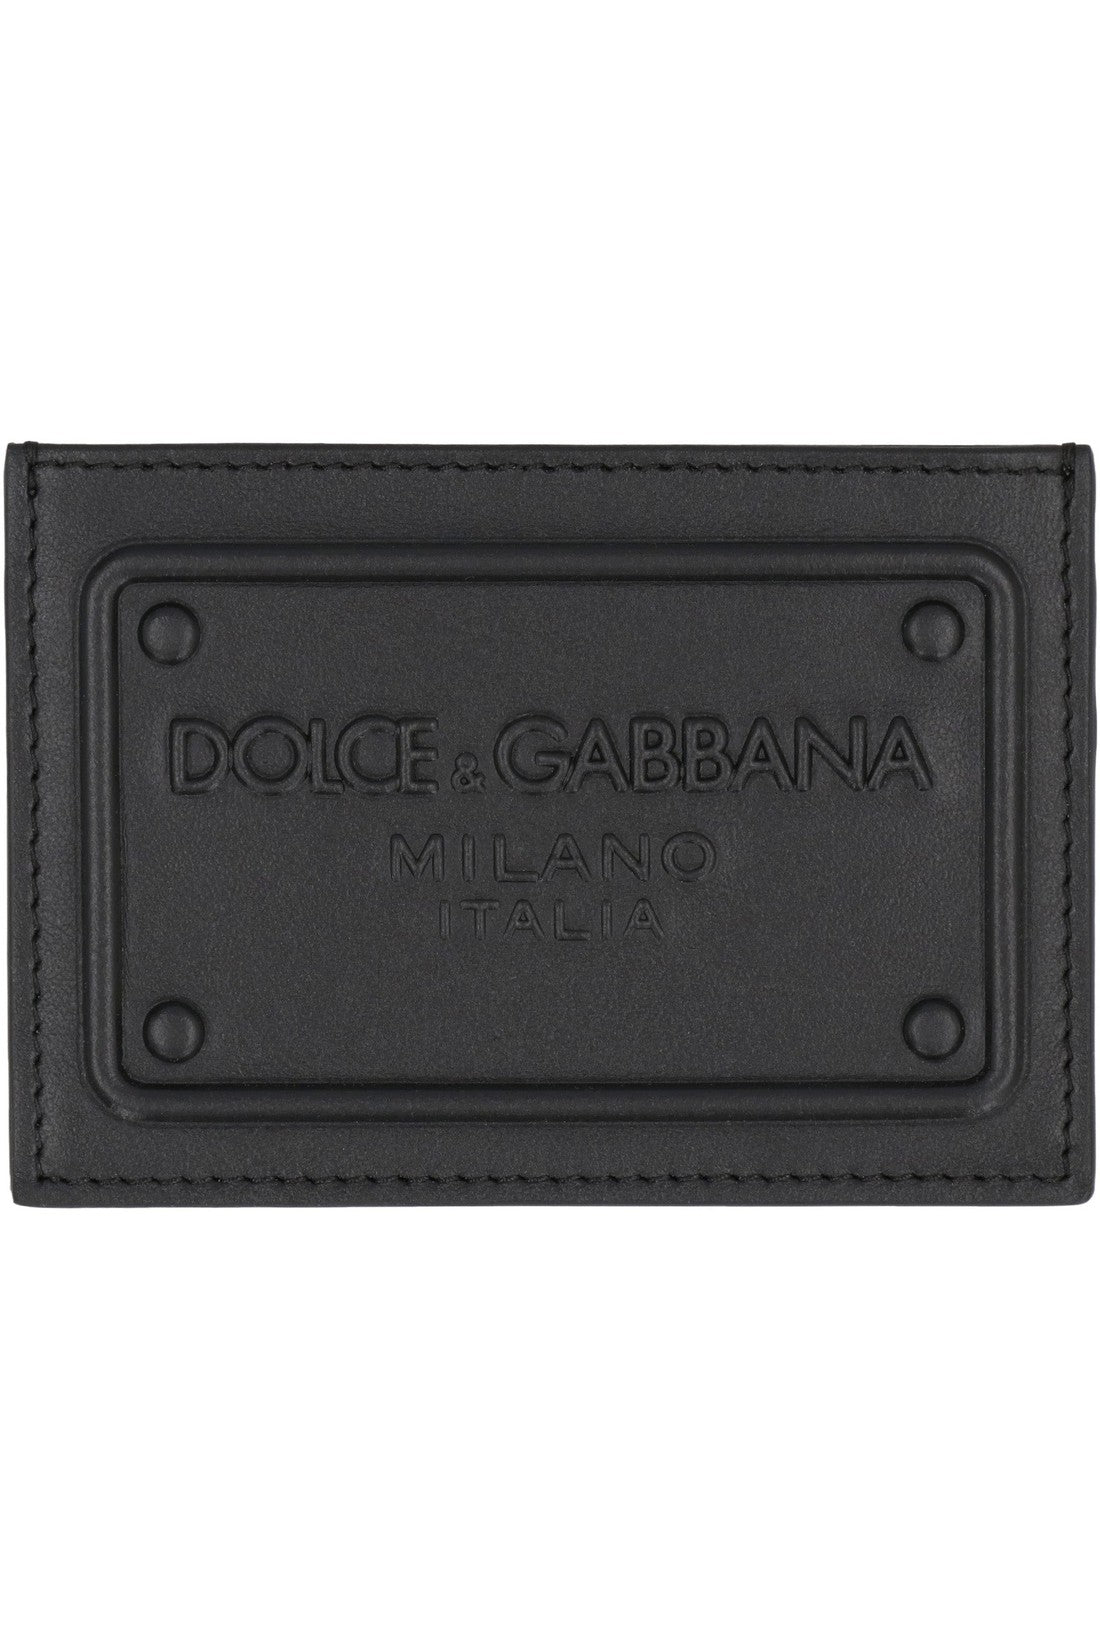 Dolce & Gabbana-OUTLET-SALE-Logo detail leather card holder-ARCHIVIST